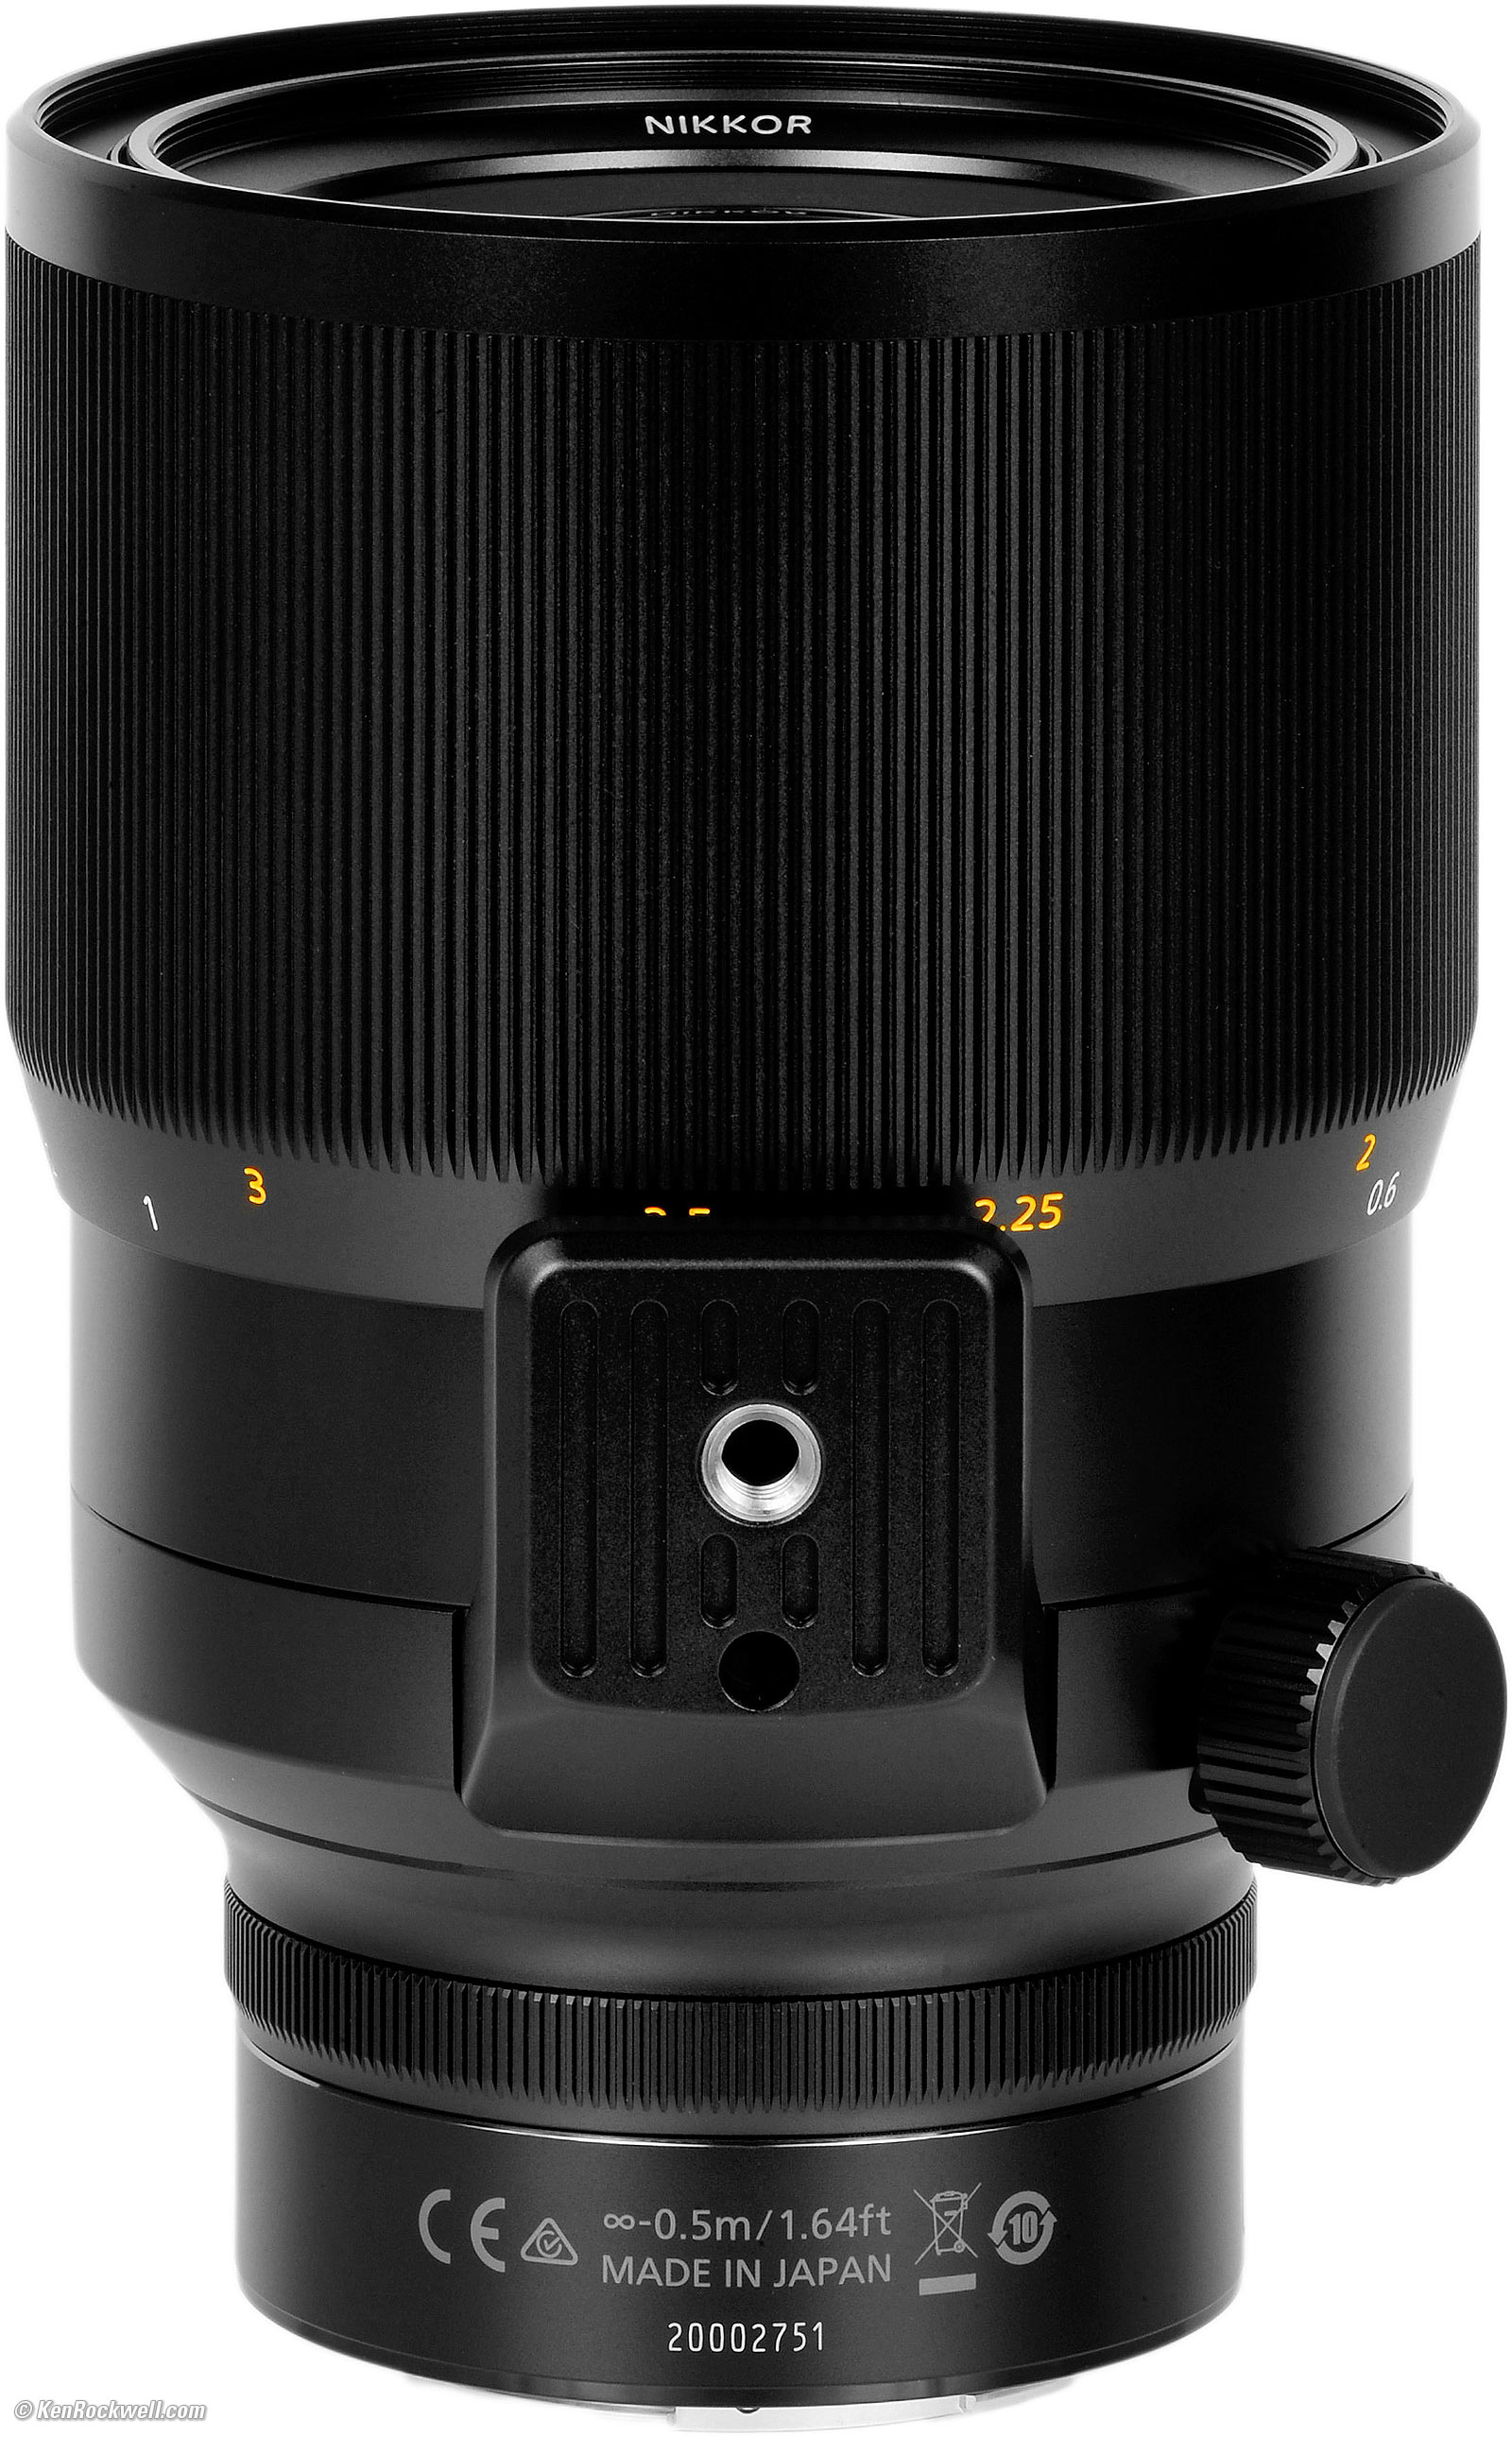 Nikon Z5 Camera and Nikon Z 58mm F0.95 S Noct Lens